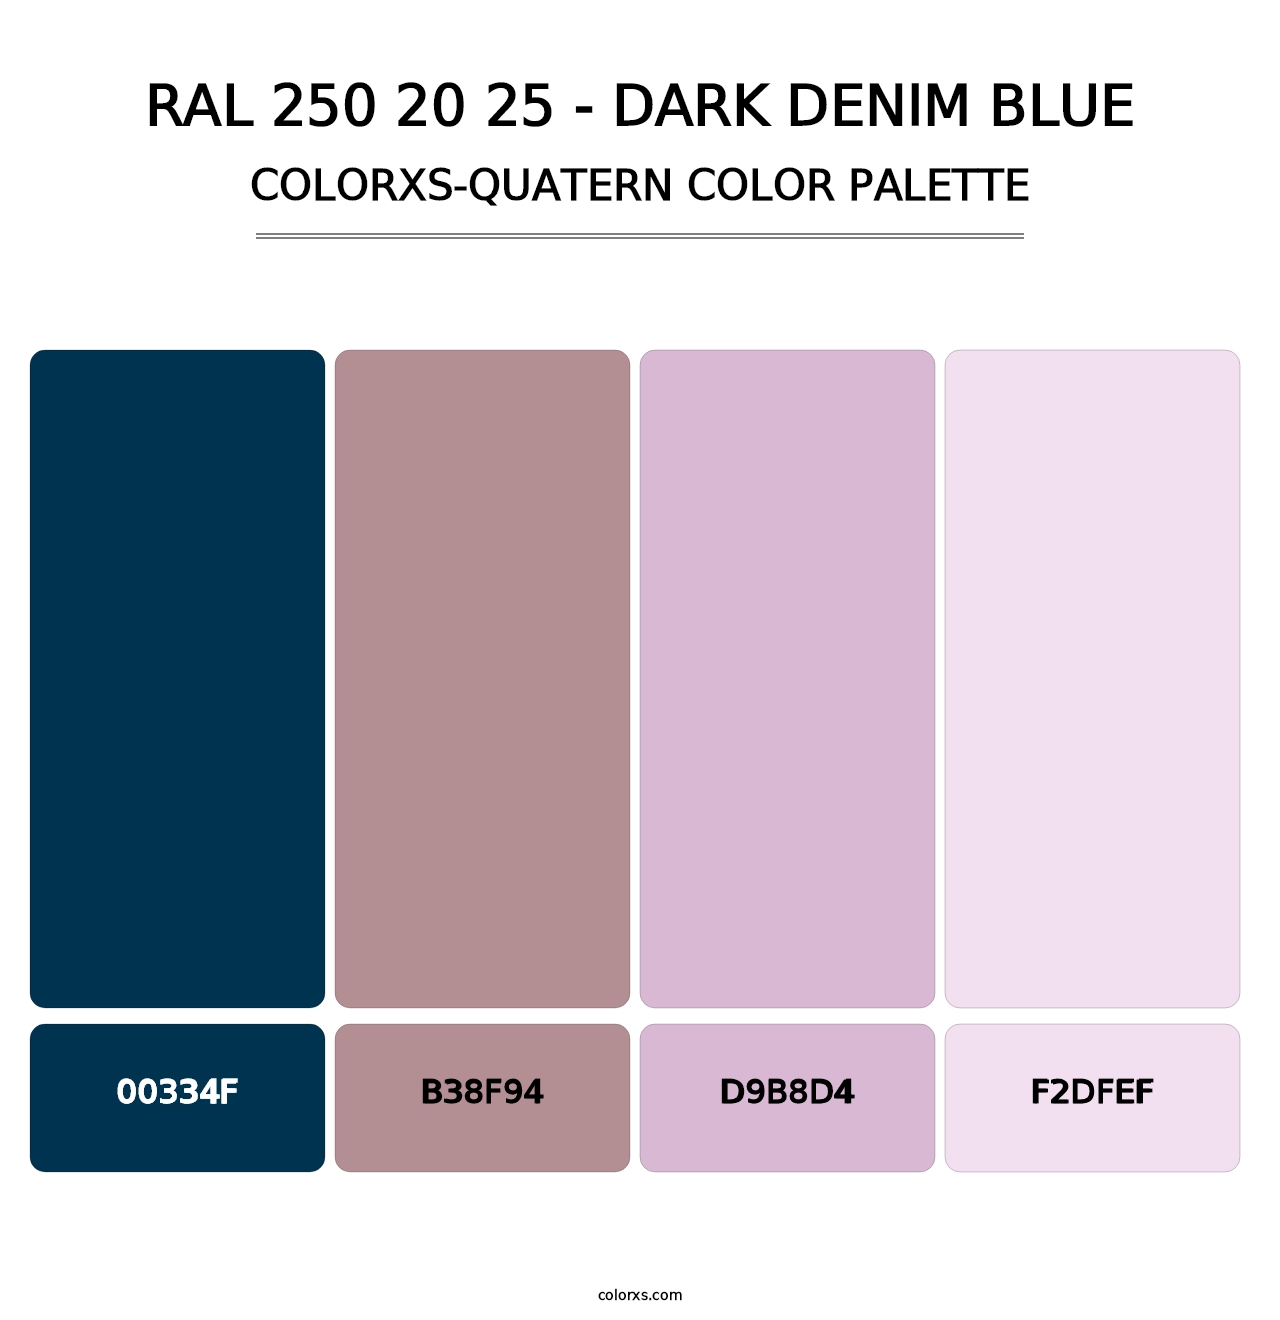 RAL 250 20 25 - Dark Denim Blue - Colorxs Quatern Palette